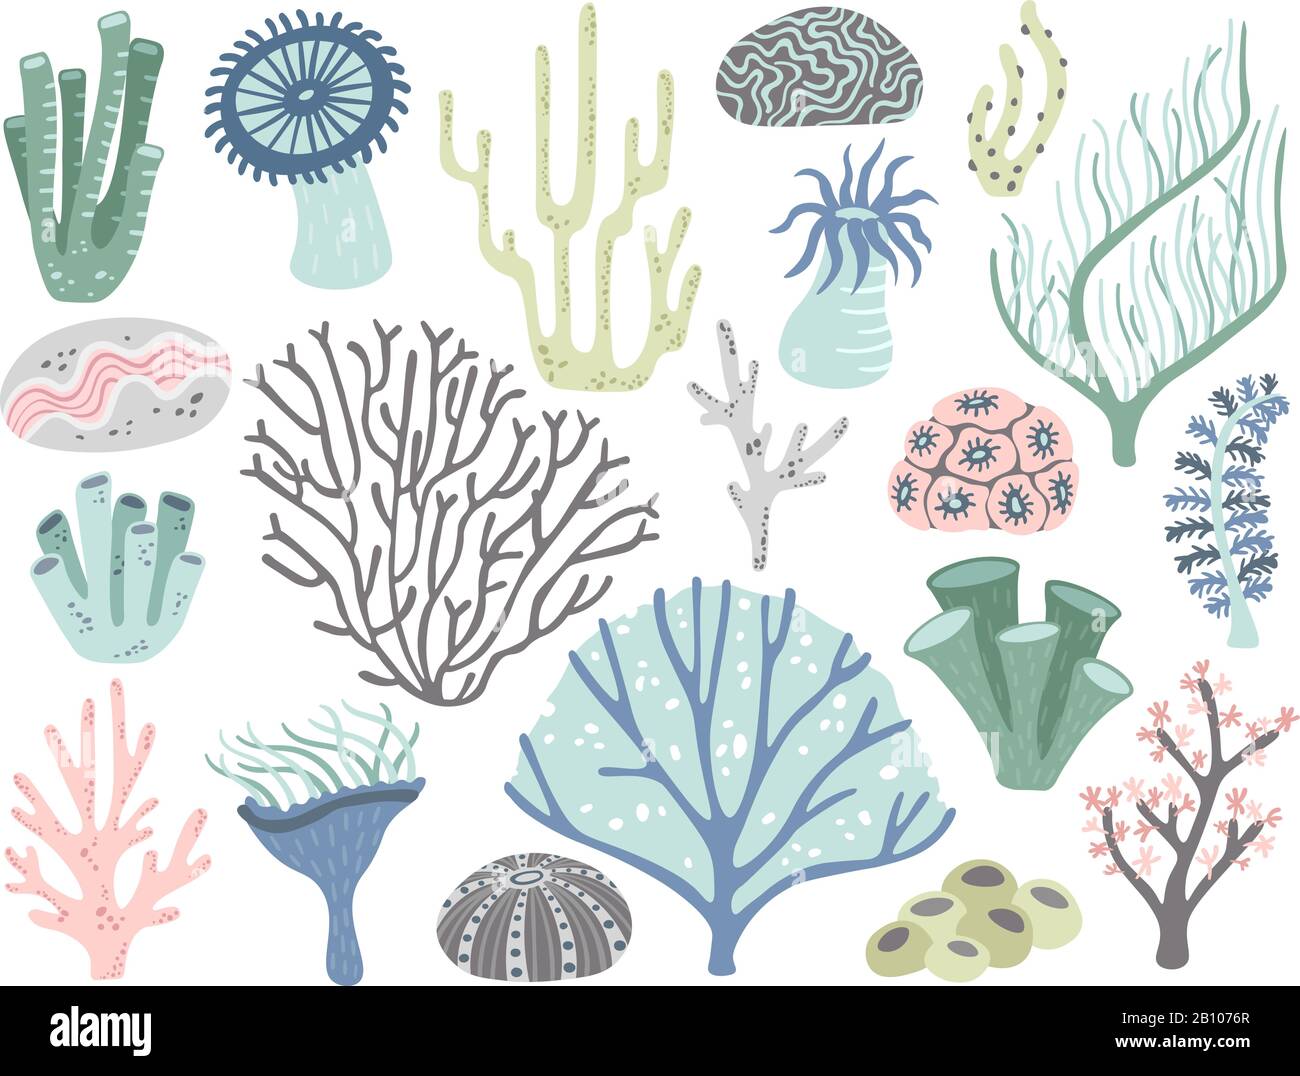 Coraux et algues de l'aquarium. Marine océan corail flore, décor sous l'eau algue et différentes plantes aquatiques Caricature vecteur set Illustration de Vecteur